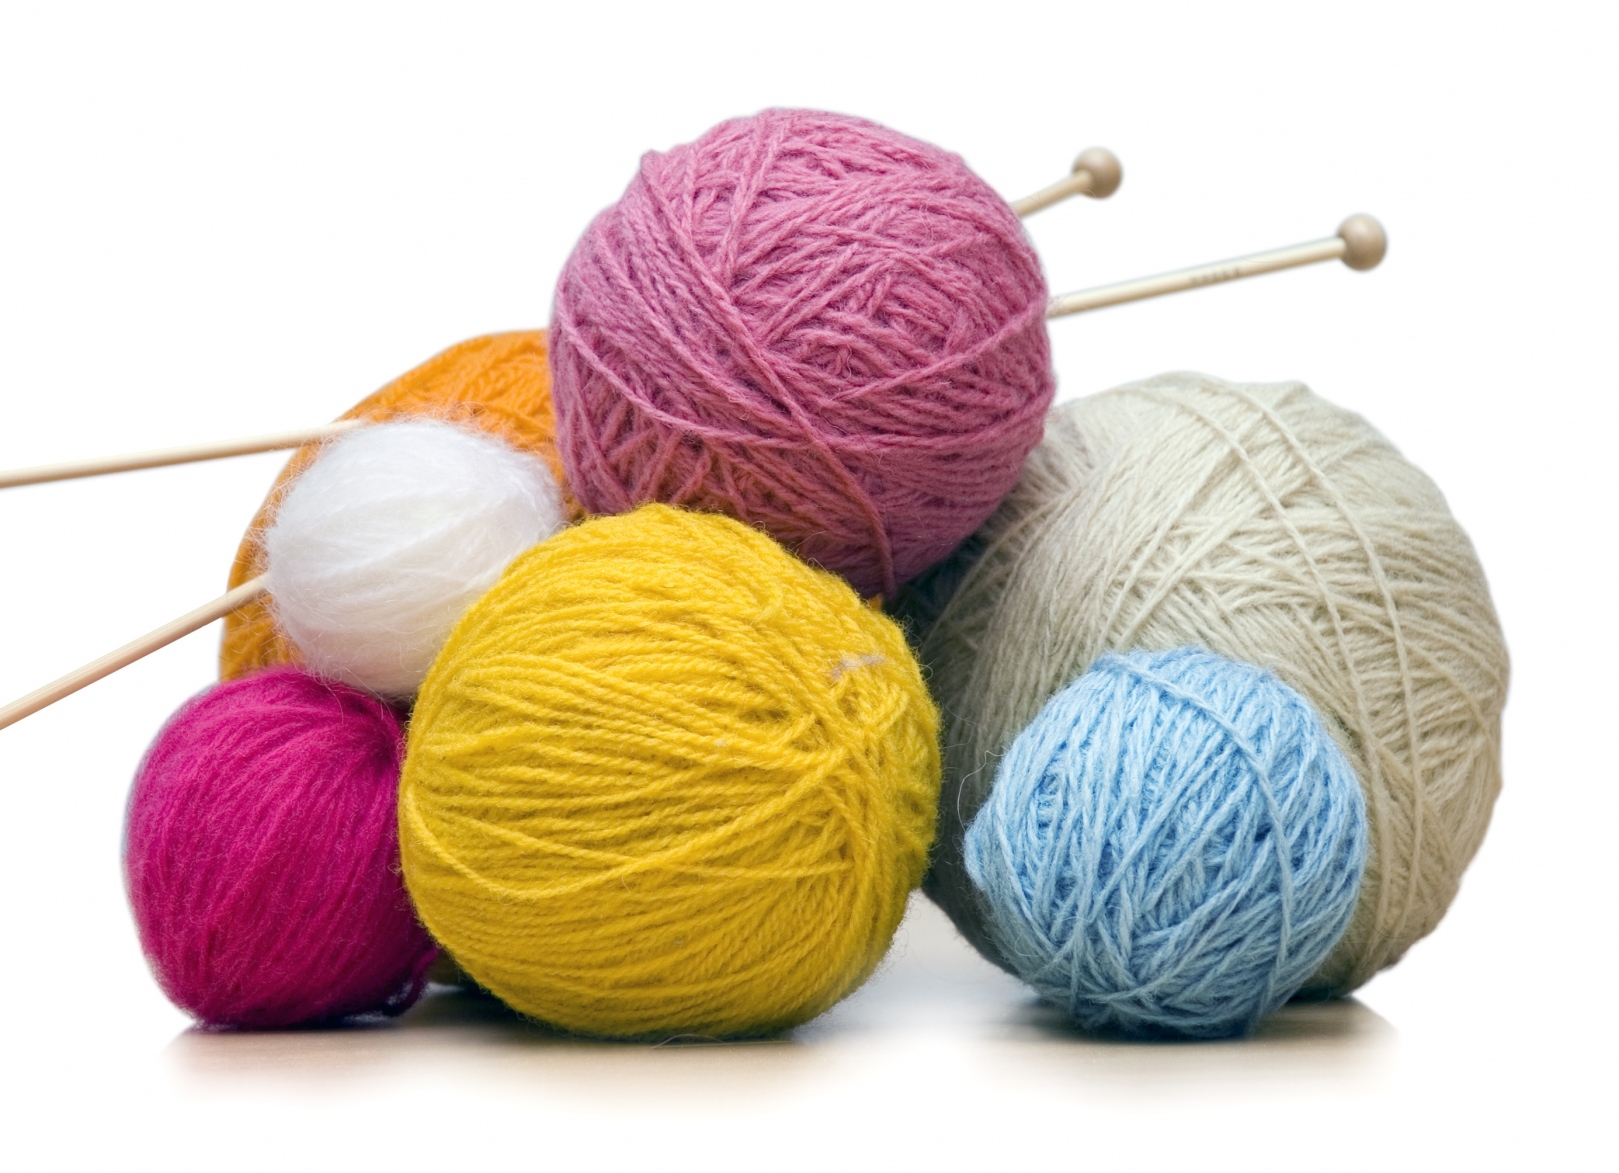 knitting balls of yarn